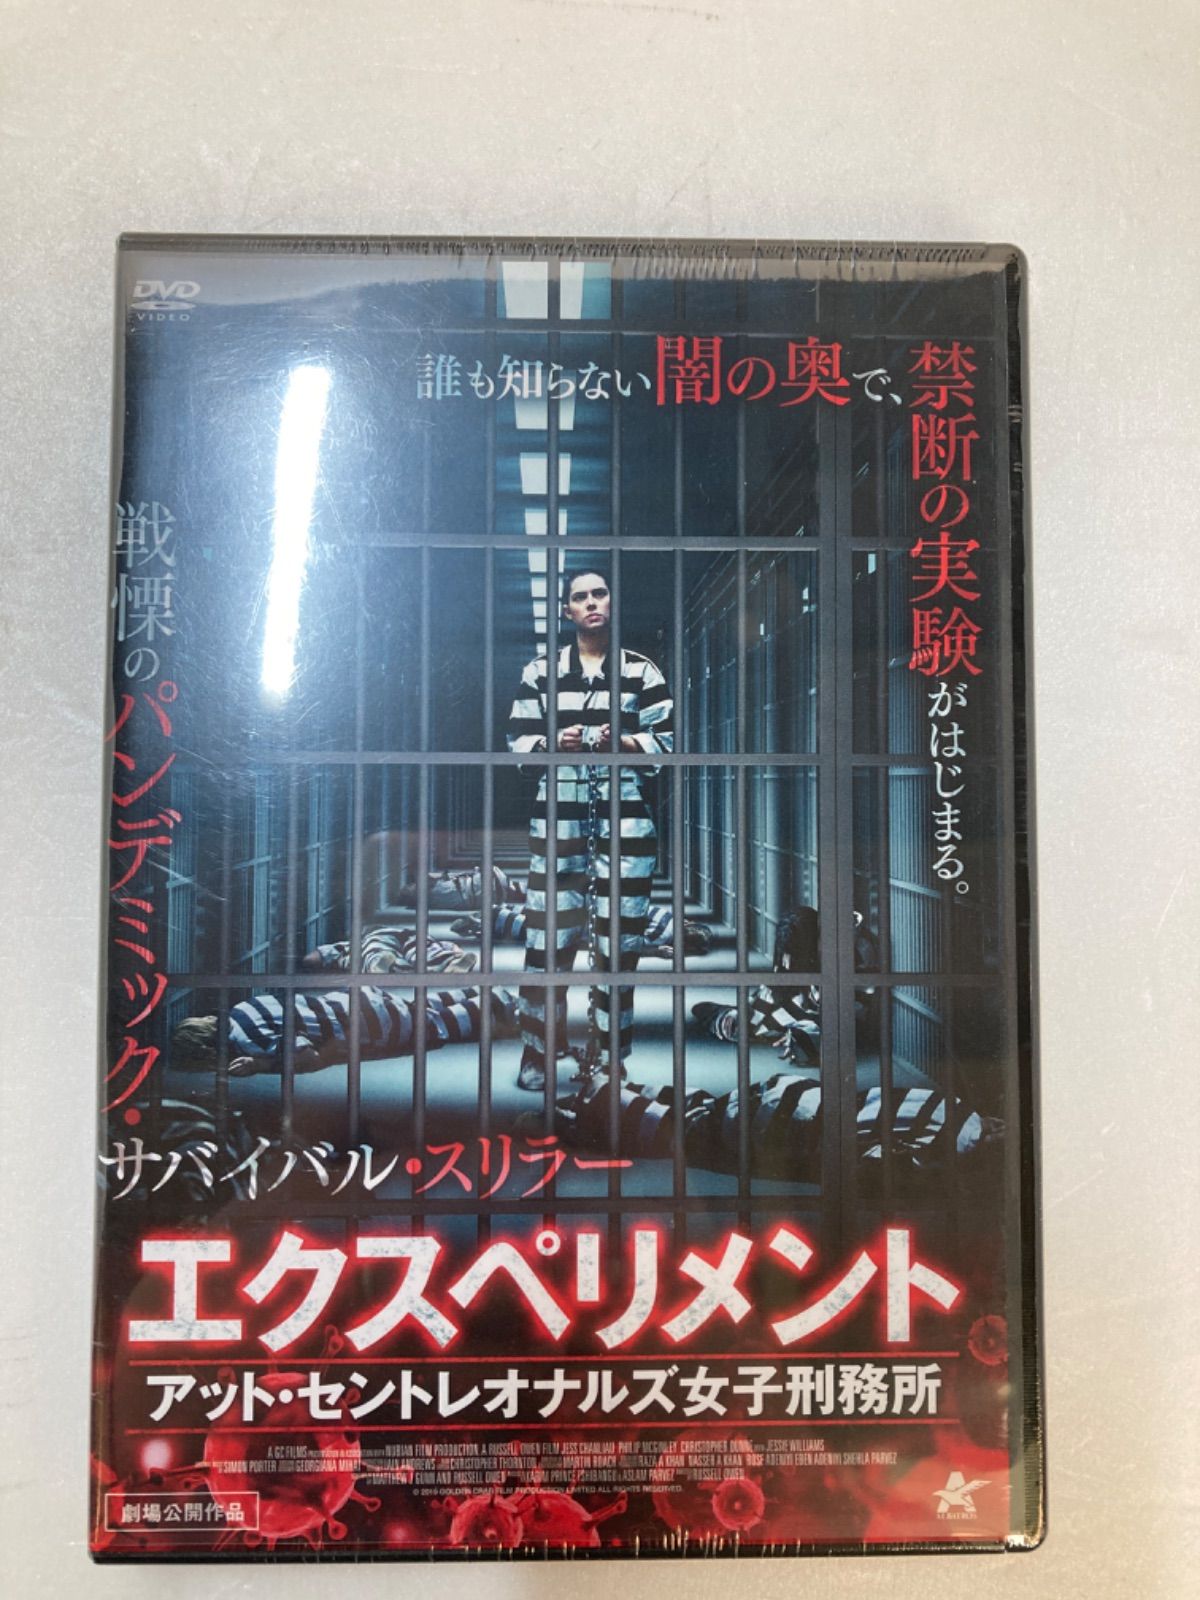 【41】エクスペリメント・アット・セントレオナルズ女子刑務所 [DVD]